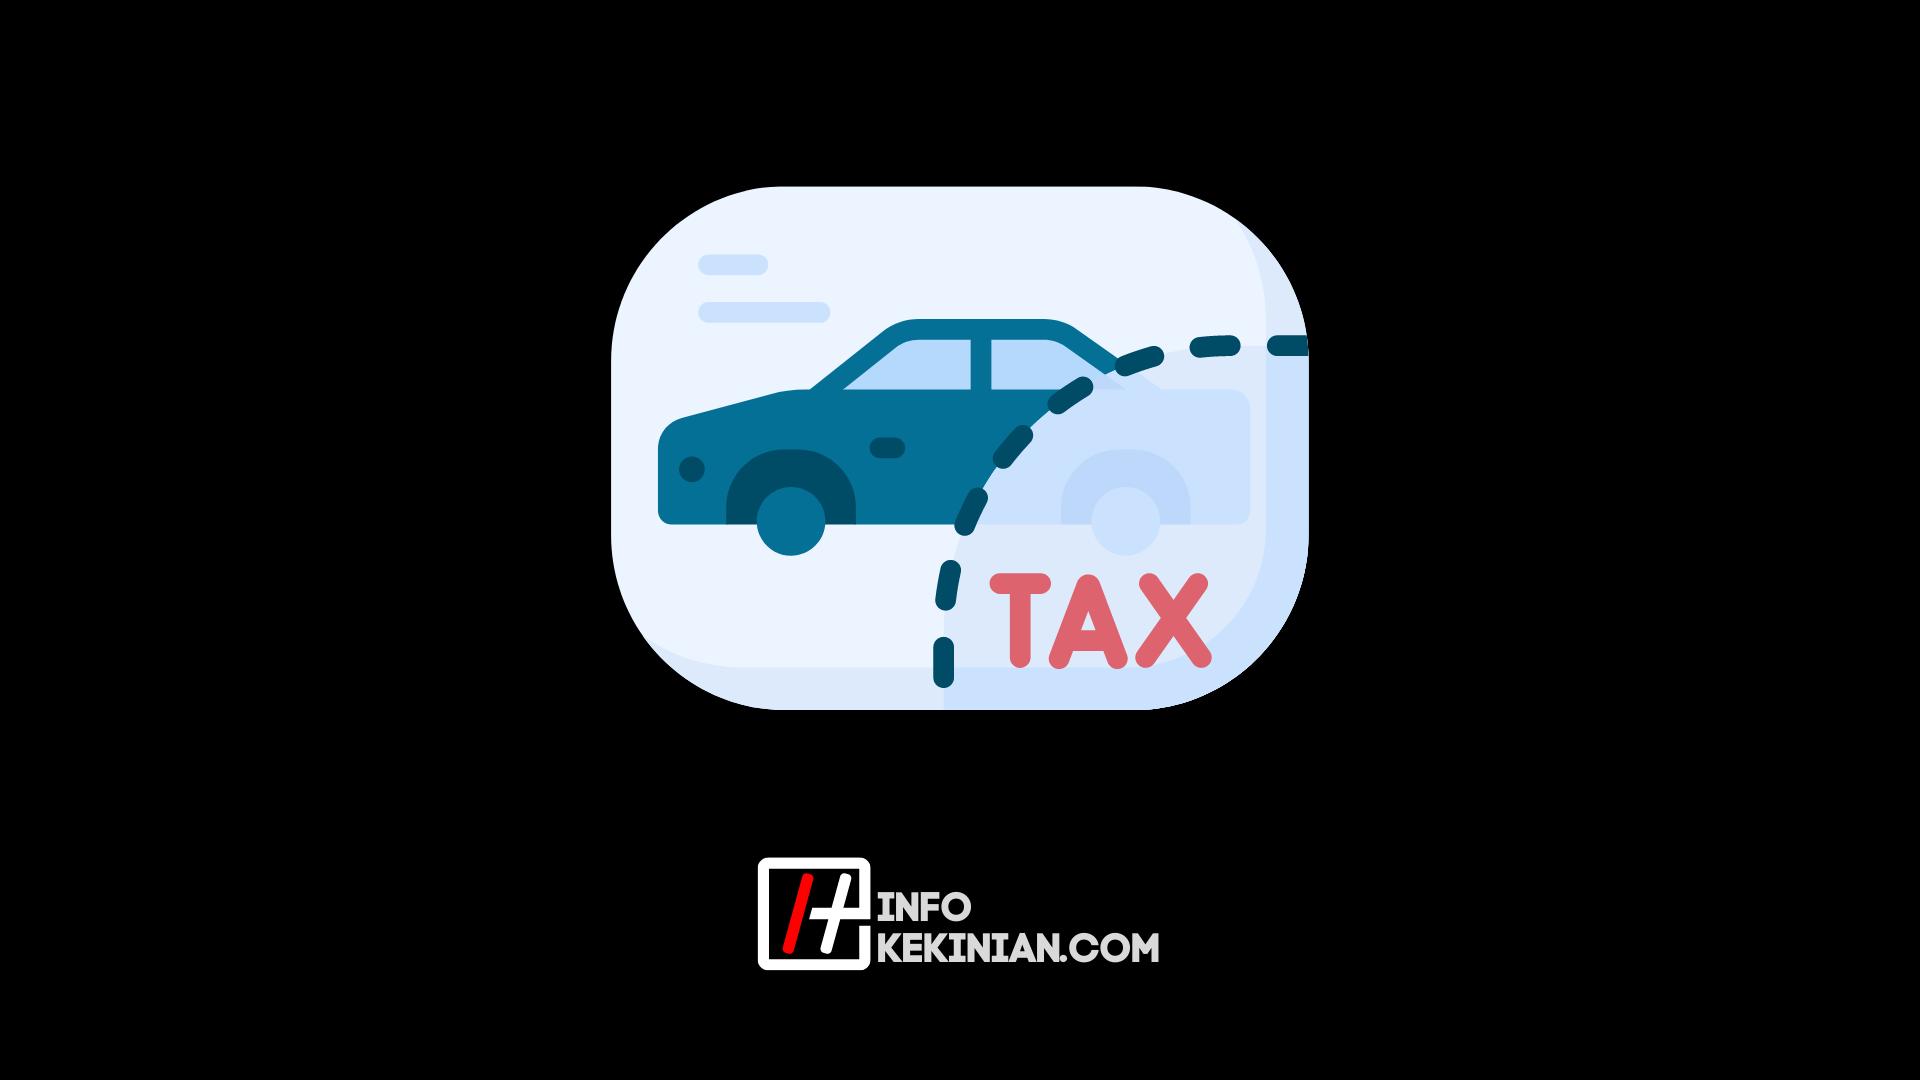 Vérification en ligne de la taxe sur les véhicules à Yogyakarta